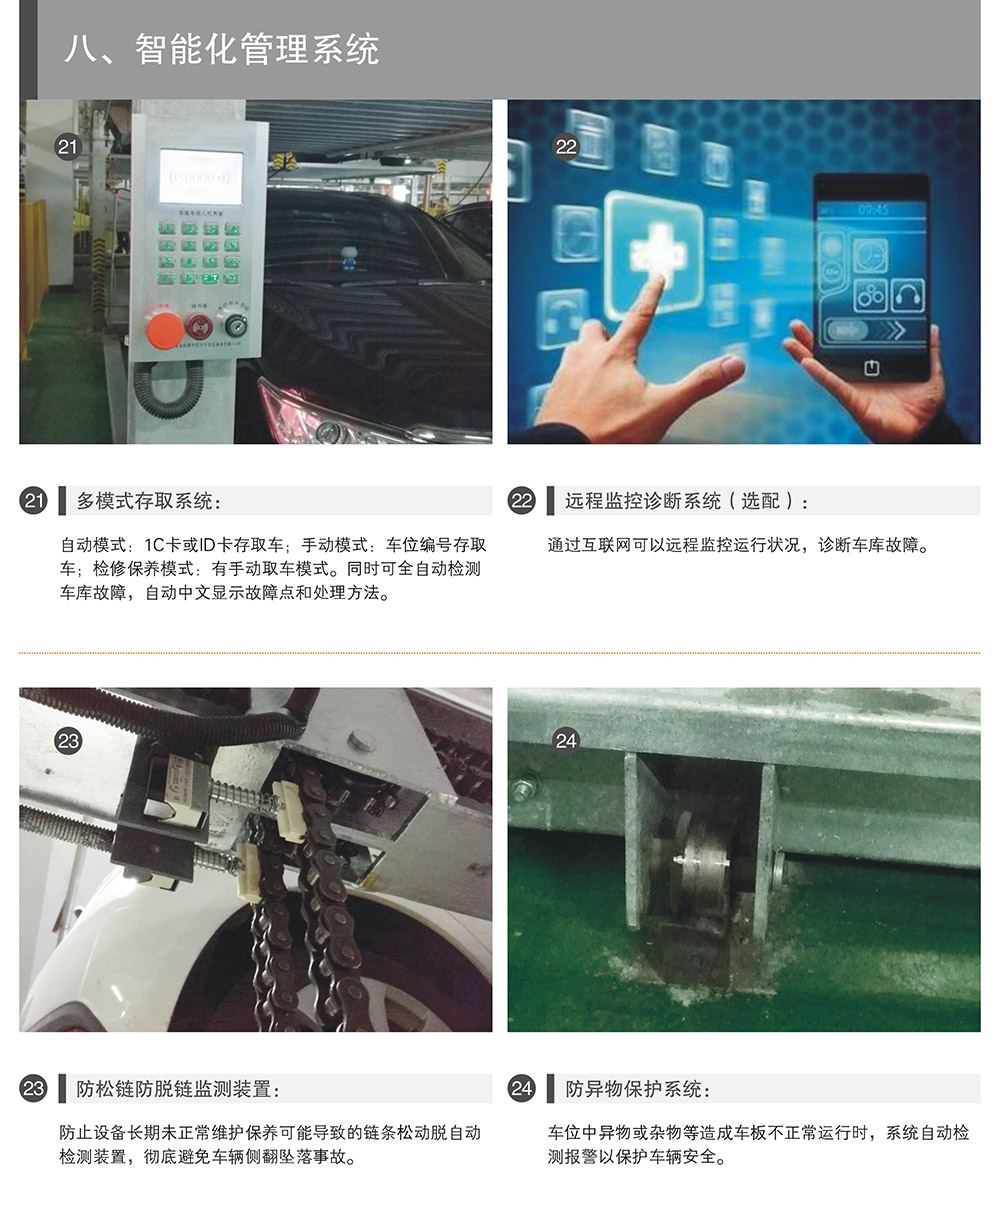 重庆负一正二地坑PSH3D1三层升降横移立体停车设备智能化管理系统.jpg